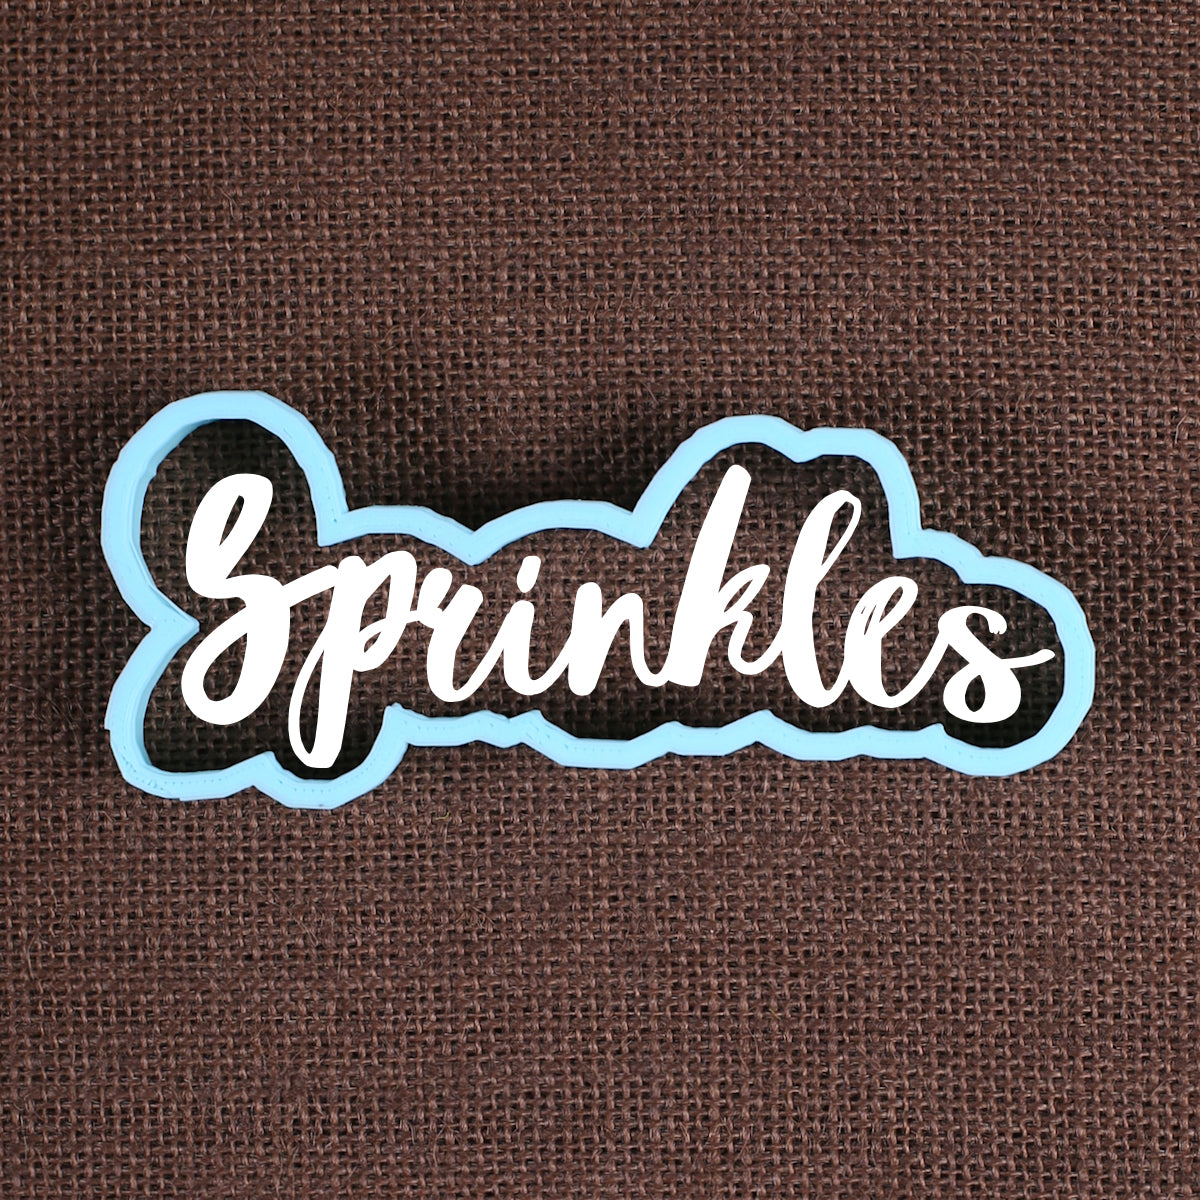 Designer Sprinkles Cookie Cutter | www.sprinklebeesweet.com